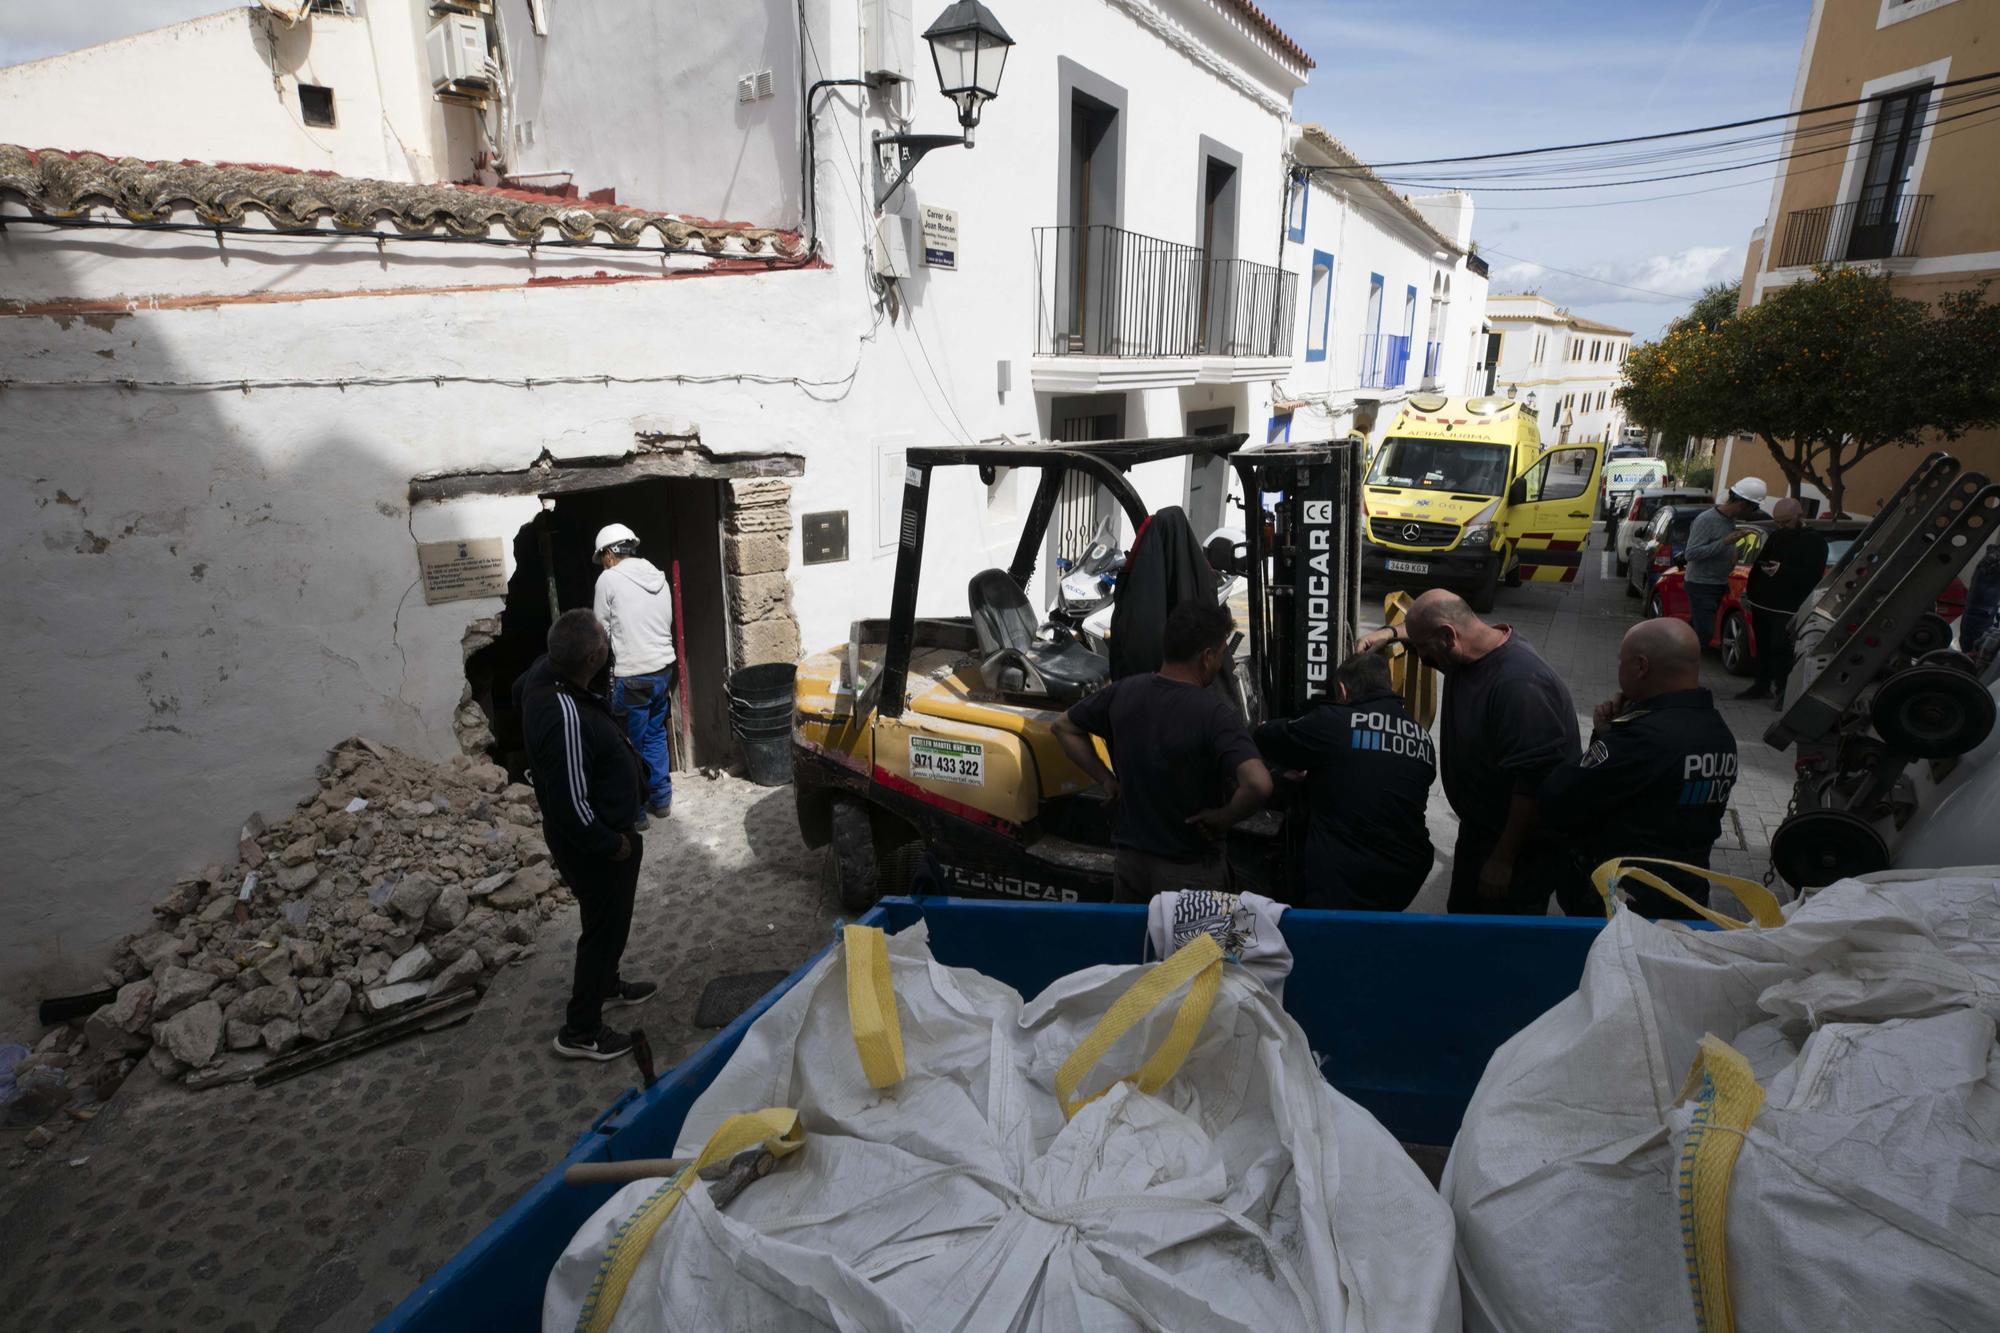 Galería de imágenes del toro mecánico siniestrado contra una casa en Ibiza